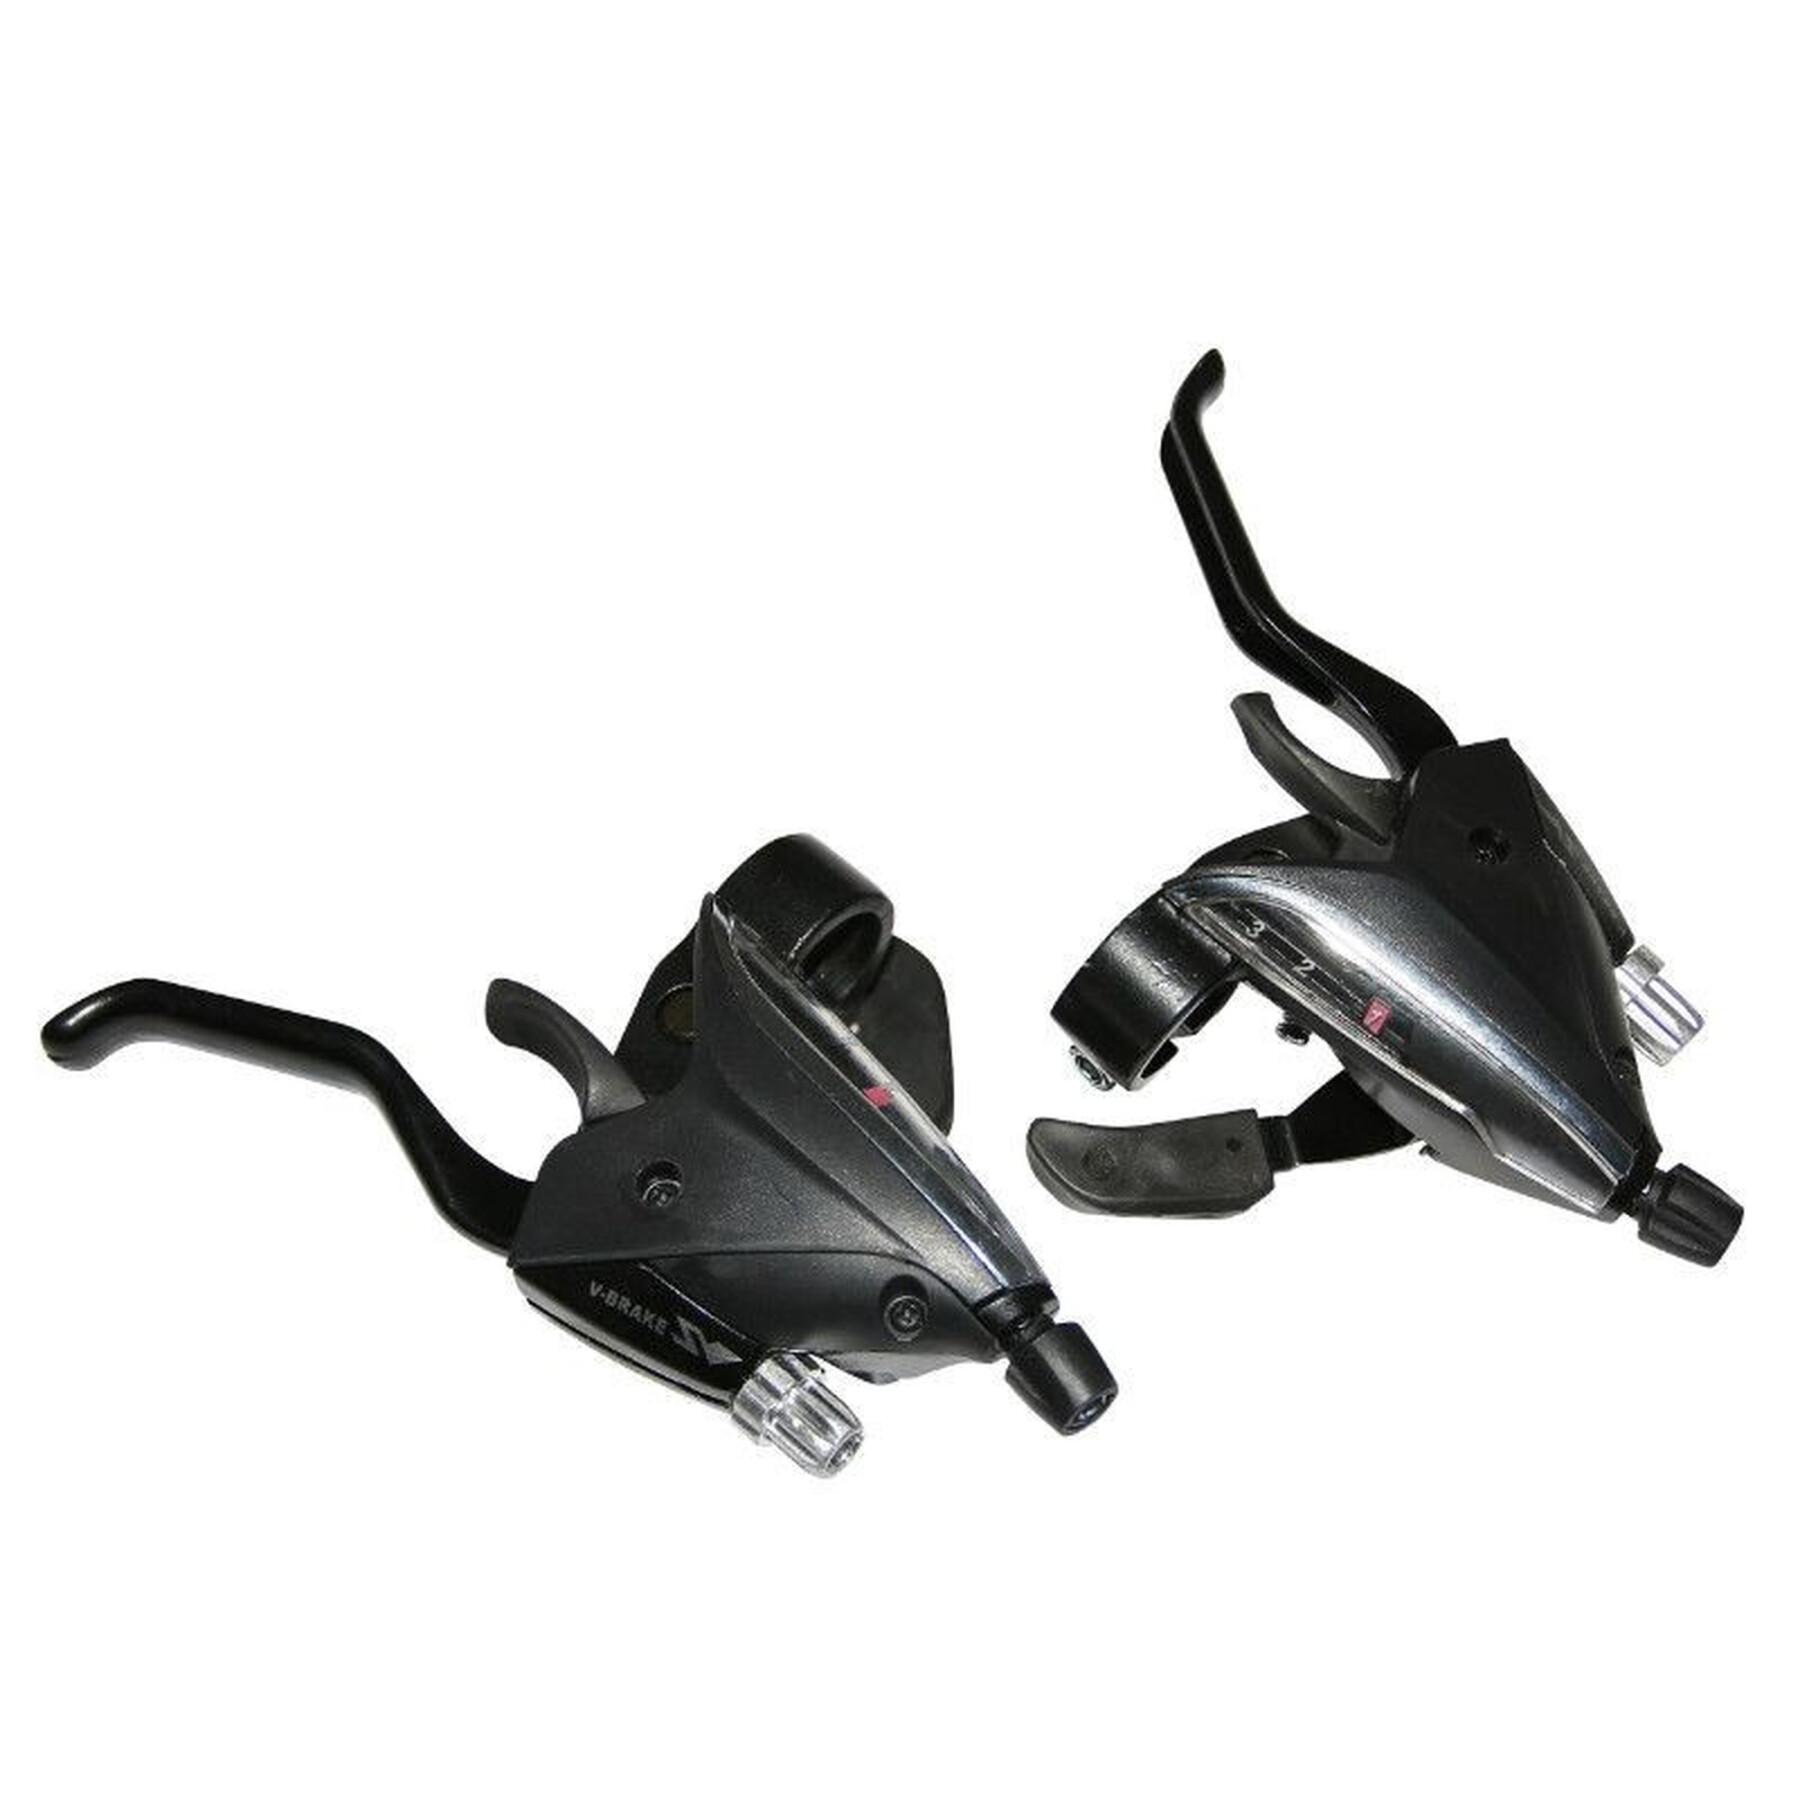 Para aluminiowych dźwigni rowerowych azera do hamulców kompatybilnych z shimano P2R V-Brake